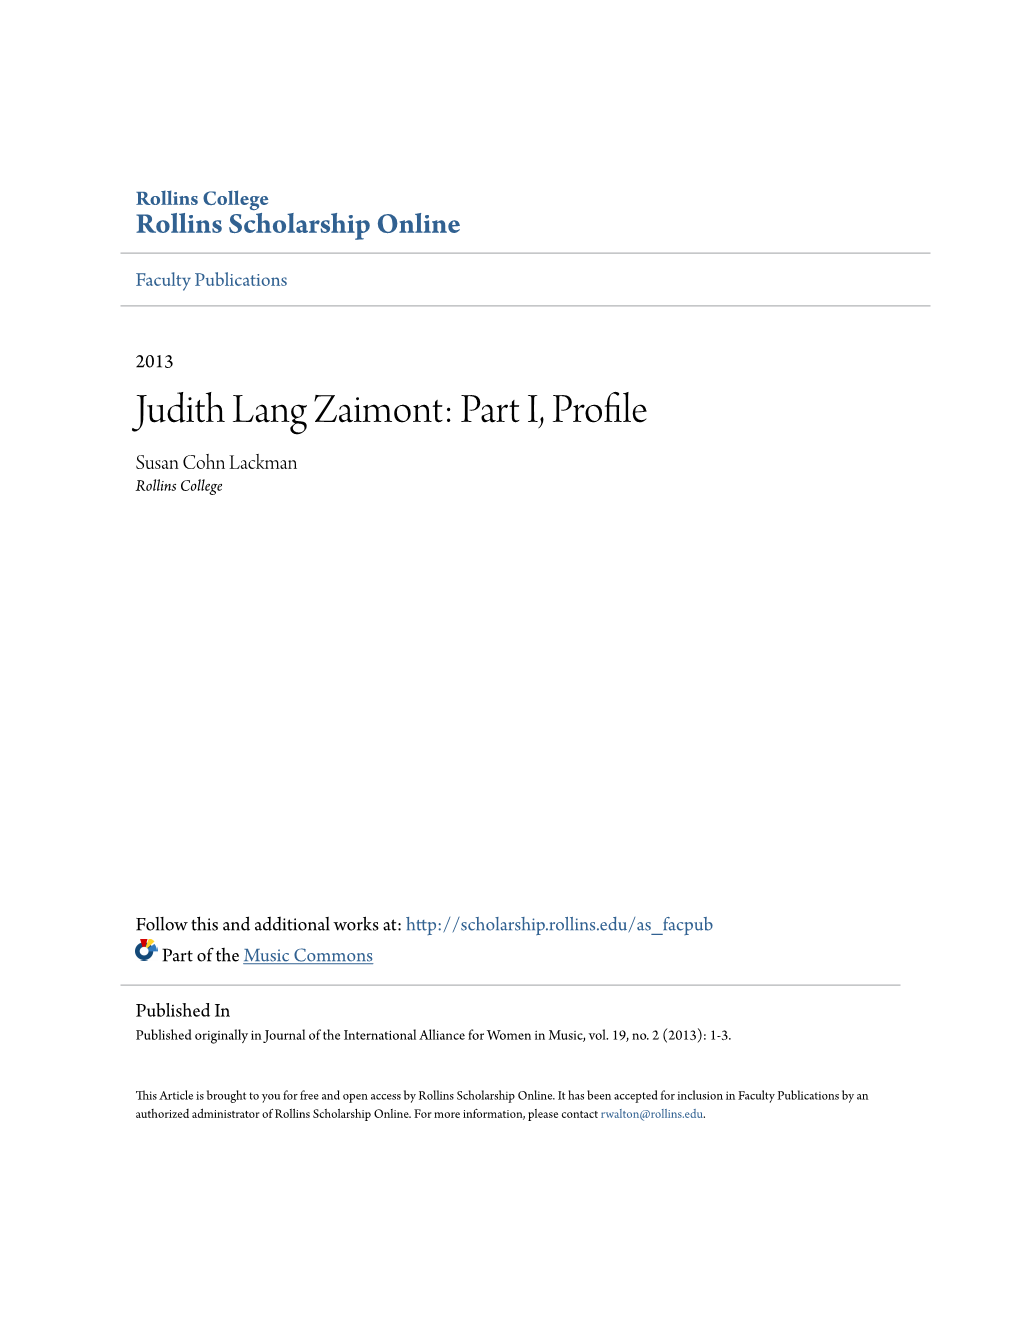 Judith Lang Zaimont: Part I, Profile Susan Cohn Lackman Rollins College